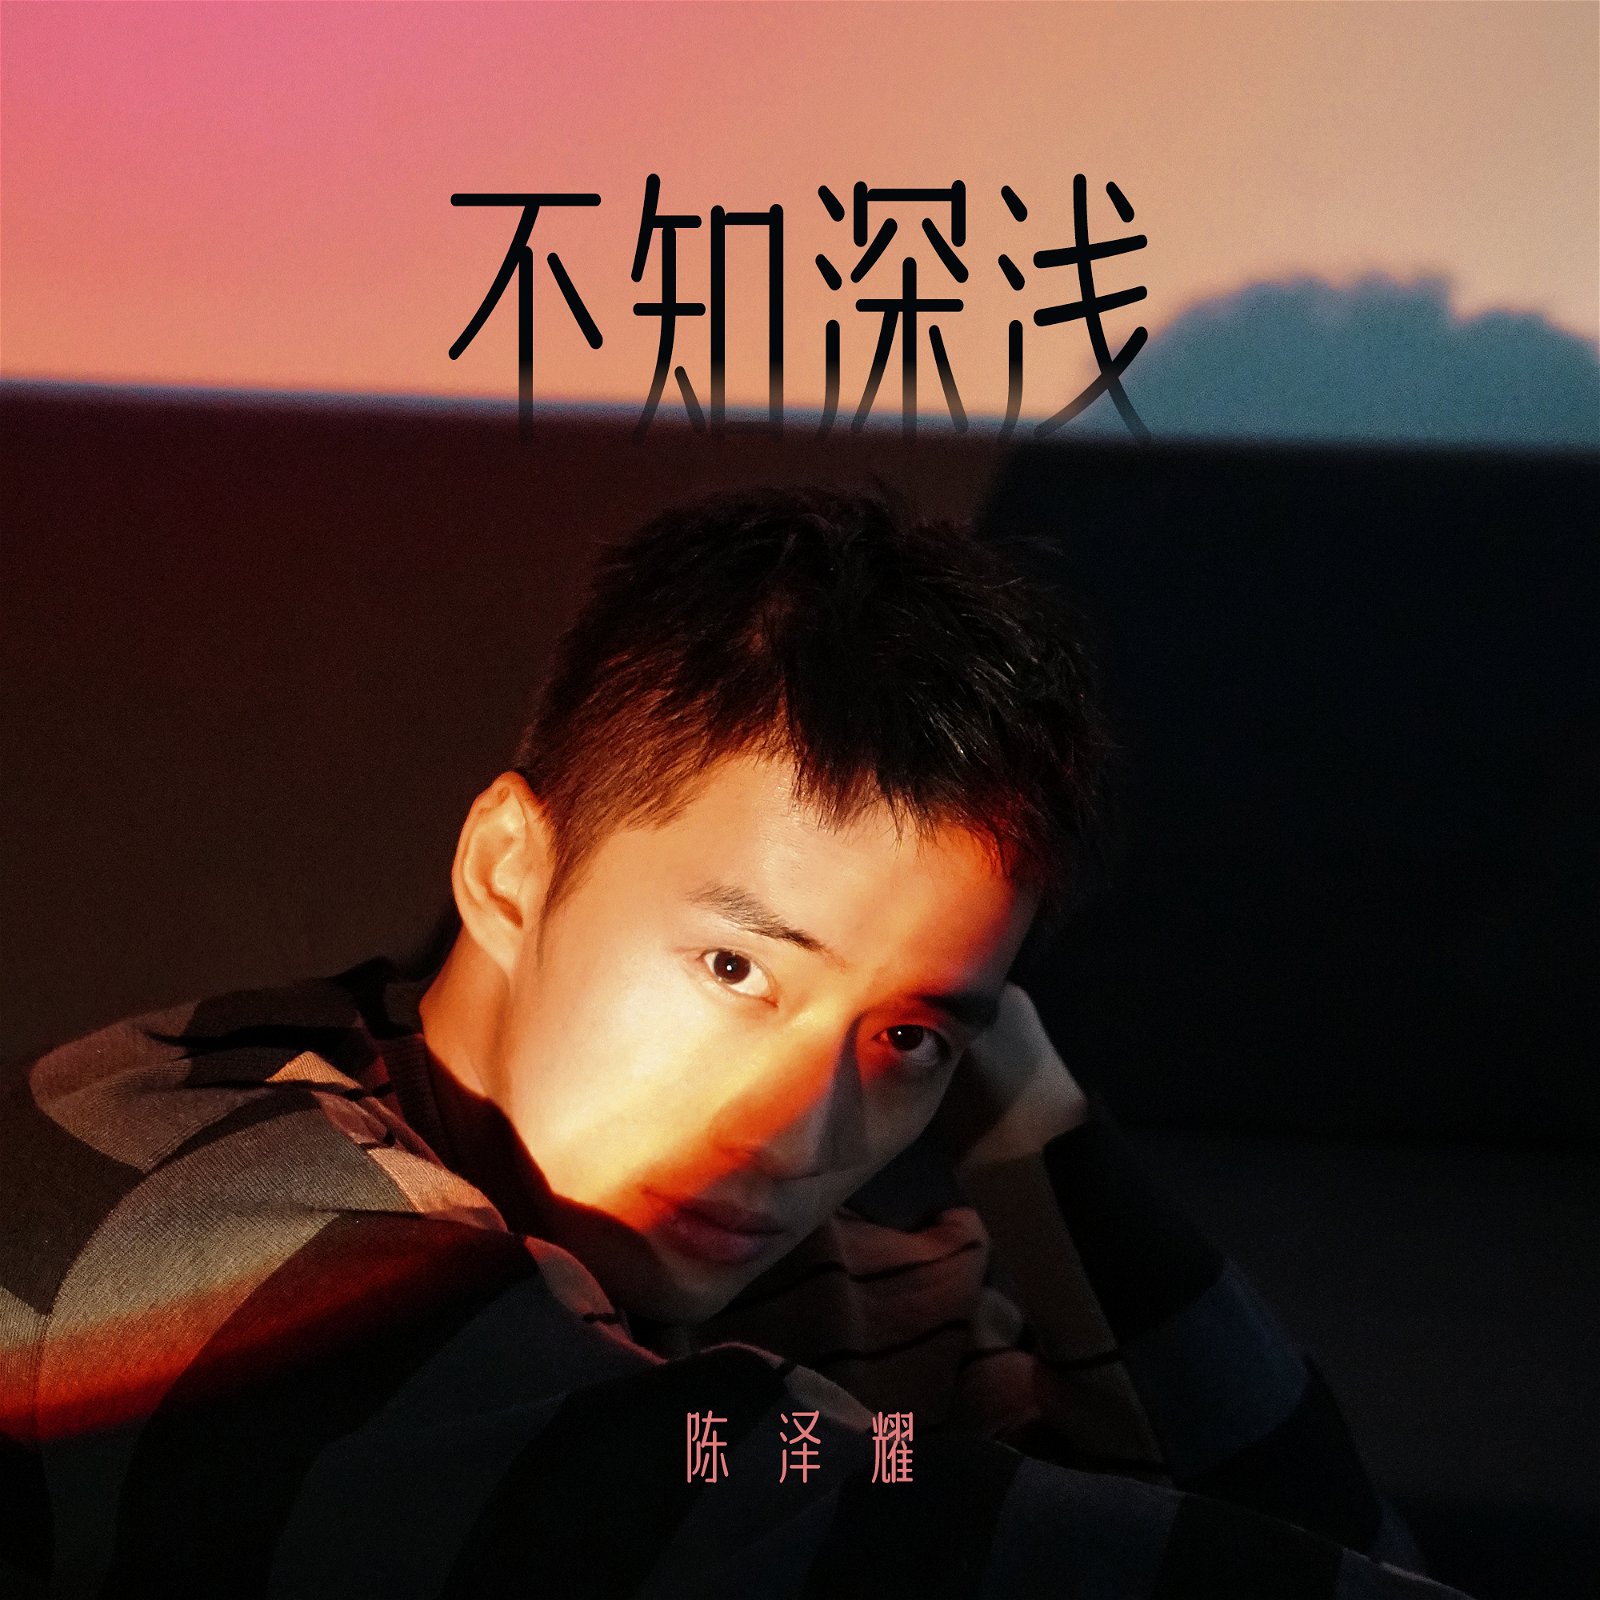 阿哲新歌《不知深浅》已在9月30日推出。